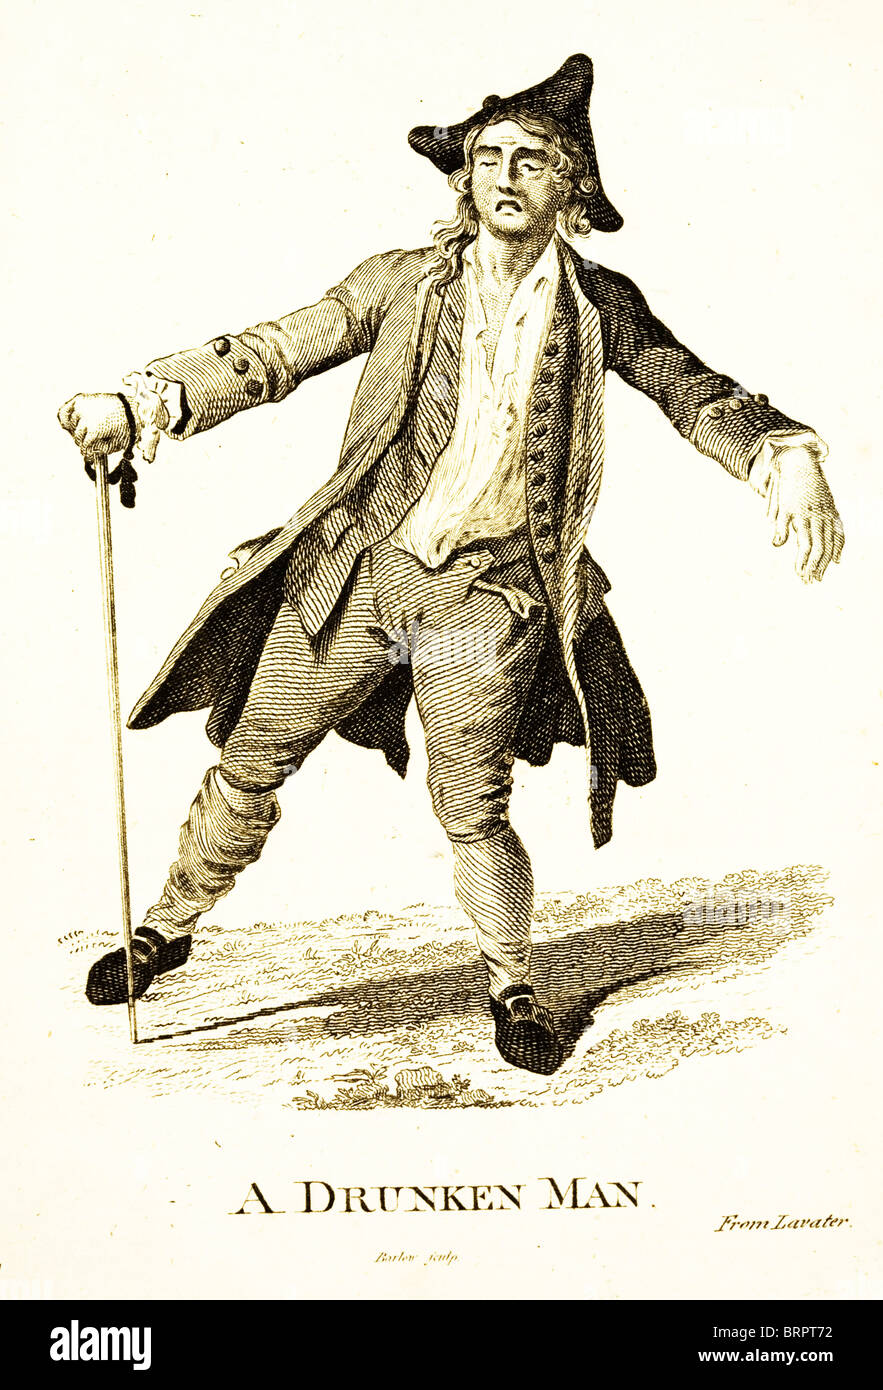 Physionomie. Un homme ivre. Gravée par Barlow D'après un dessin de Lavater. Fin du xviiie siècle. Banque D'Images